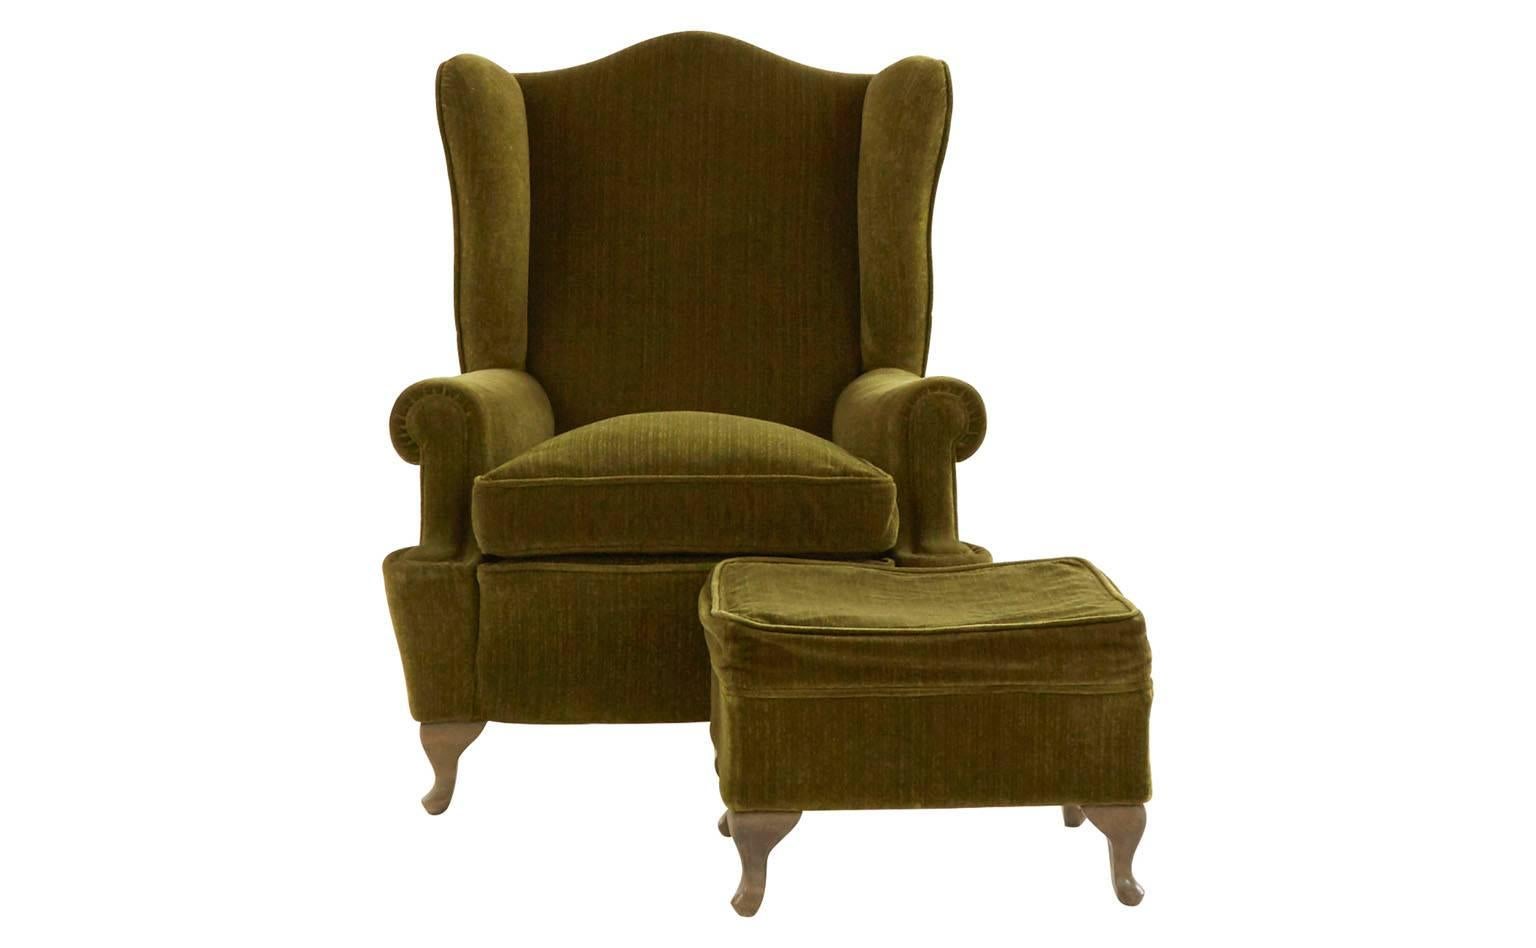 Oak legs
Original green velvet
20th century
Barcelona

Dimensions:
Chair: 26'W x 29'D x 41'H
Seat: 19'W x 21'D x 18'H
Arm height: 21'H
Ottoman: 20'W x 16'D x 14'H